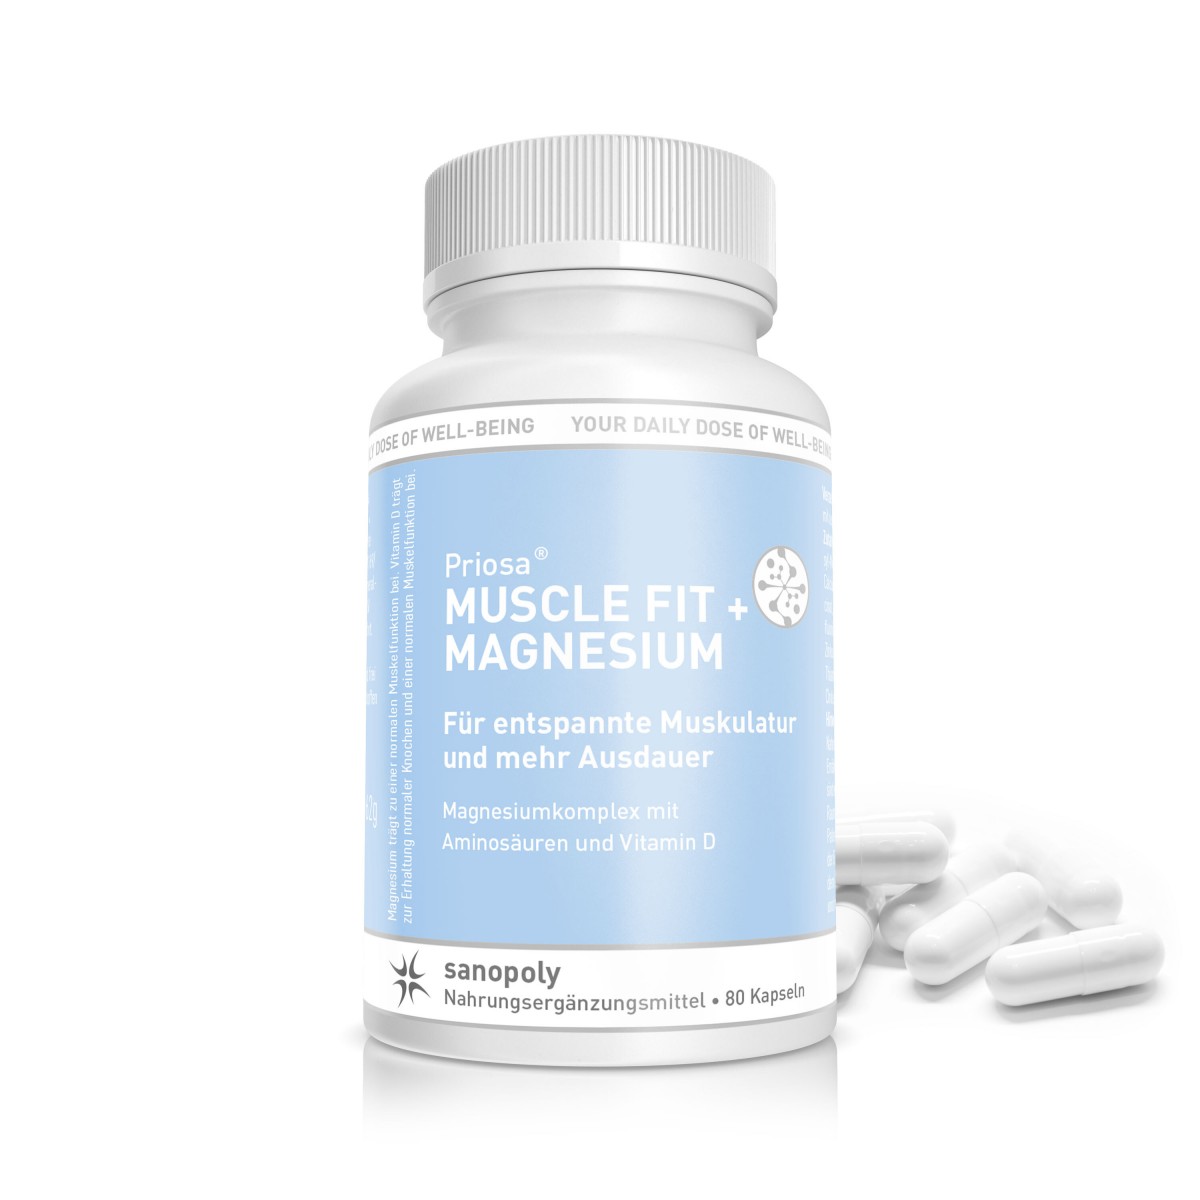 Sanopoly Priosa® MUSCLE FIT + MAGNESIUM | 80 Kapseln | für entspannte Muskulatur und mehr Ausdauer | Magnesiumkomplex mit Aminosäuren und Vitamin D